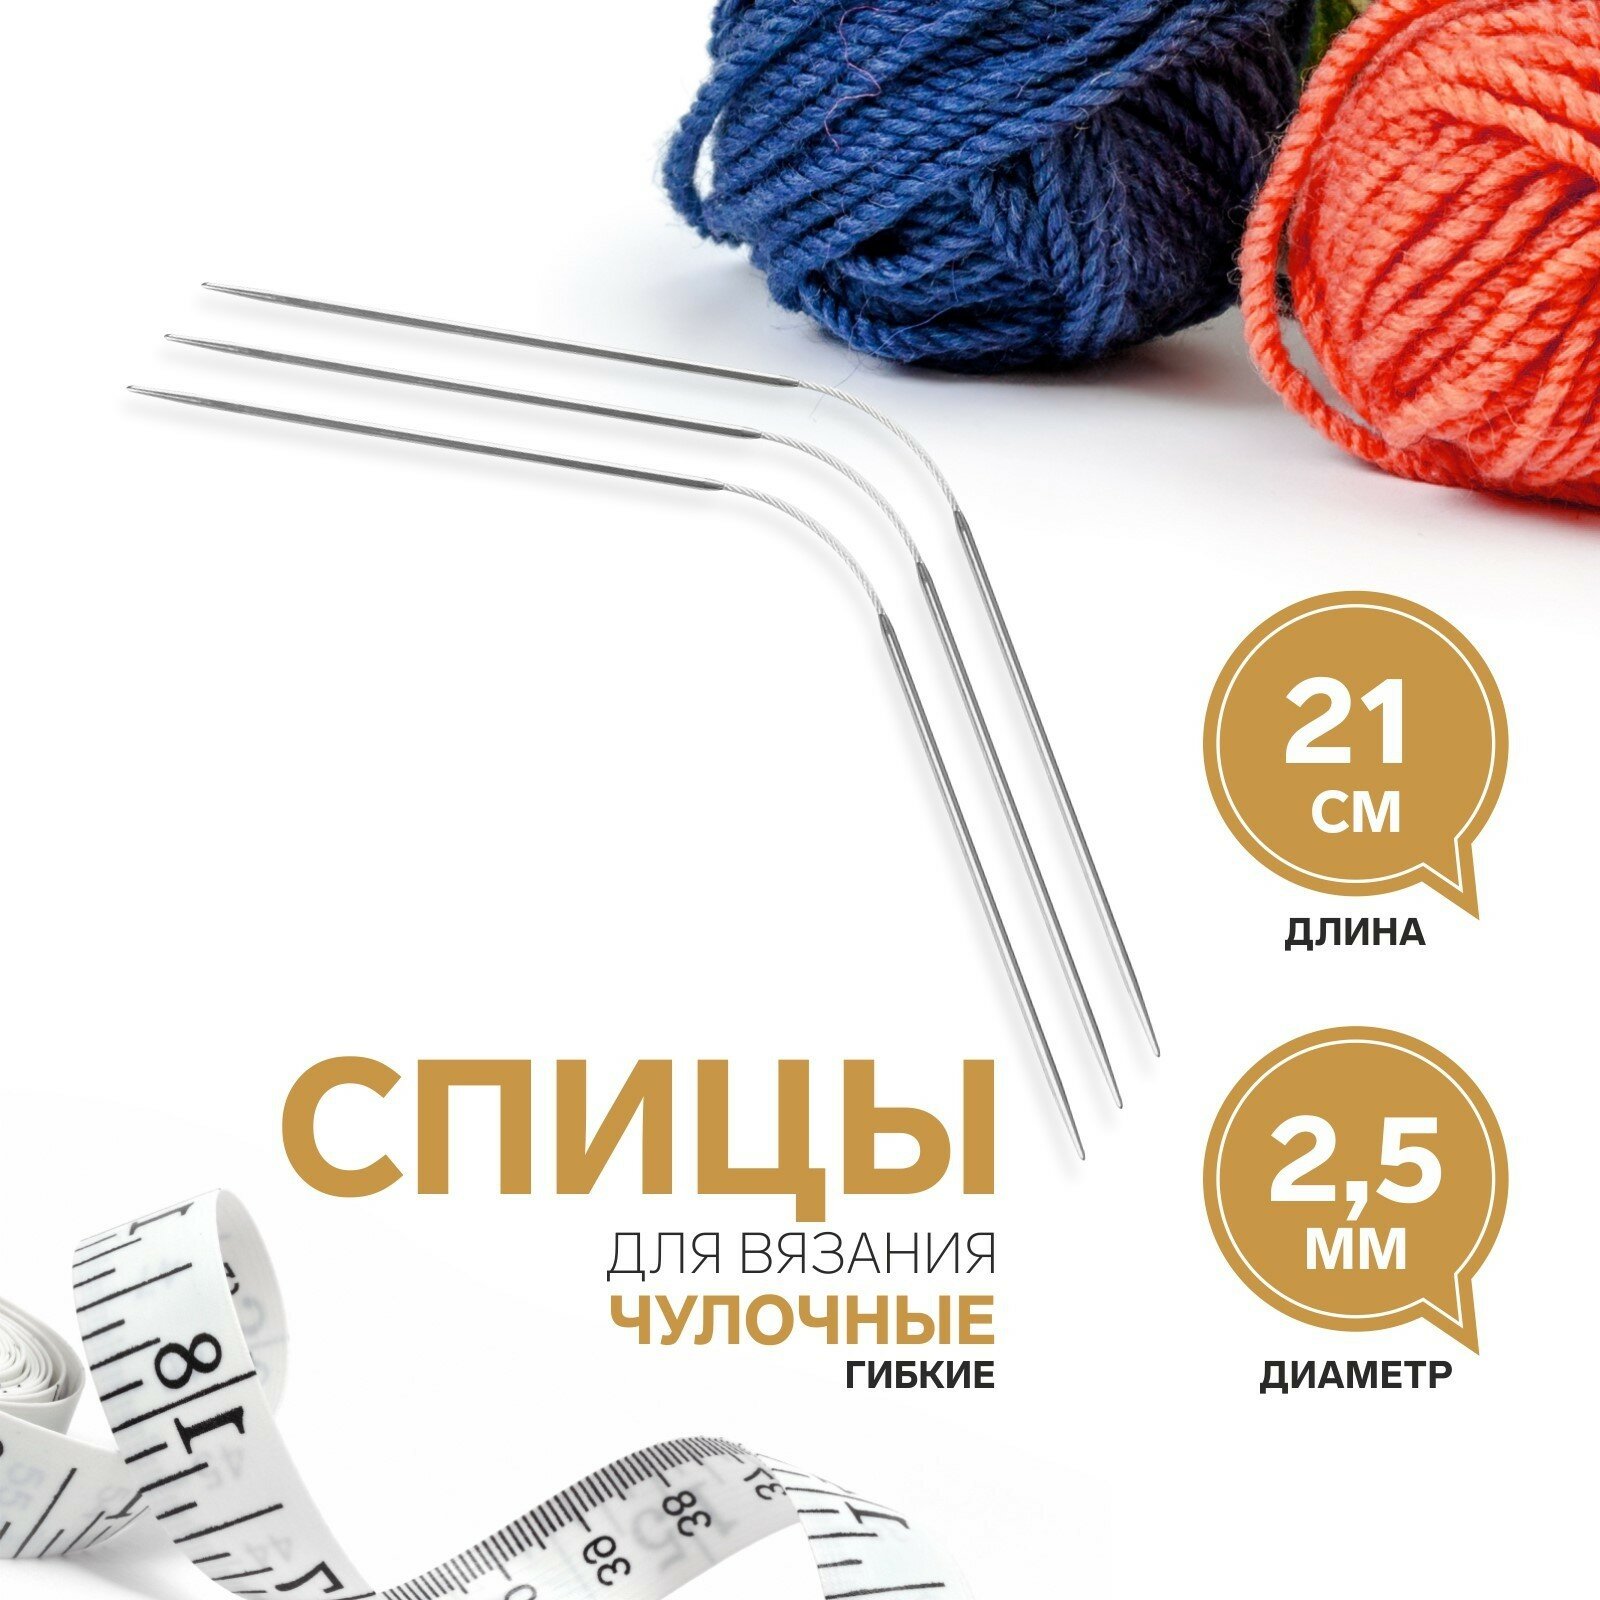 Спицы для вязания, чулочные, гибкие, d = 2,5 мм, 21 см, 3 шт (3шт.)